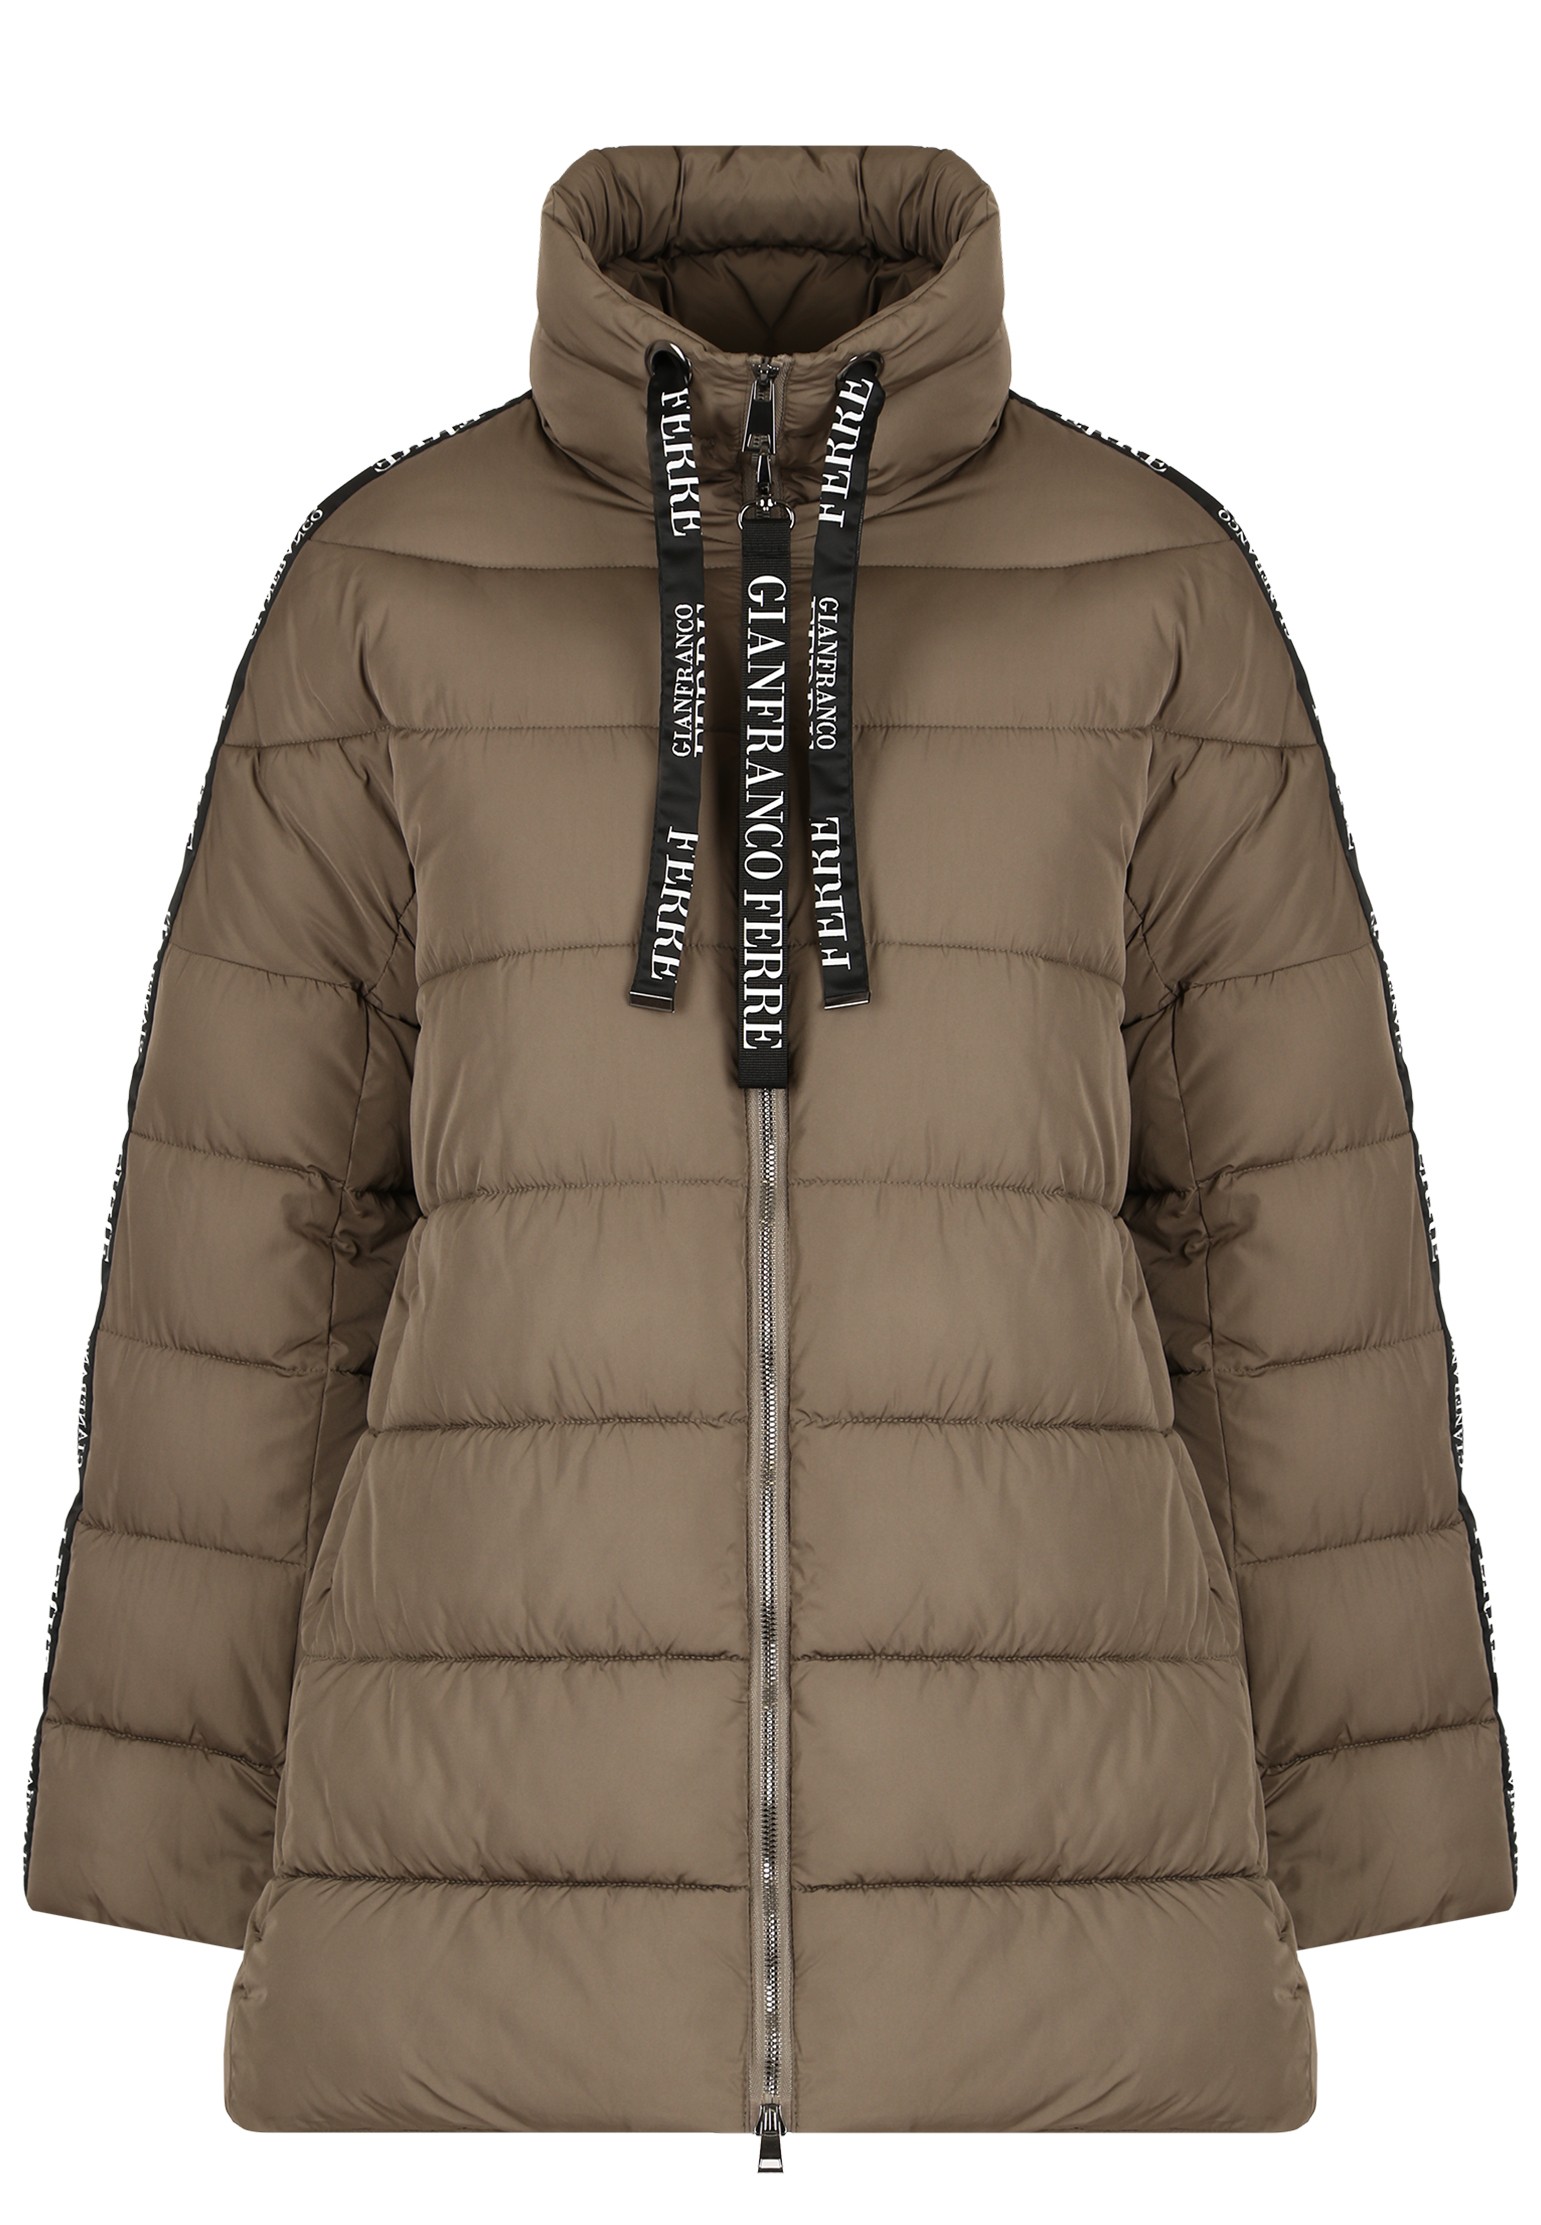 Куртка женская Gianfranco Ferre 130685 коричневая L